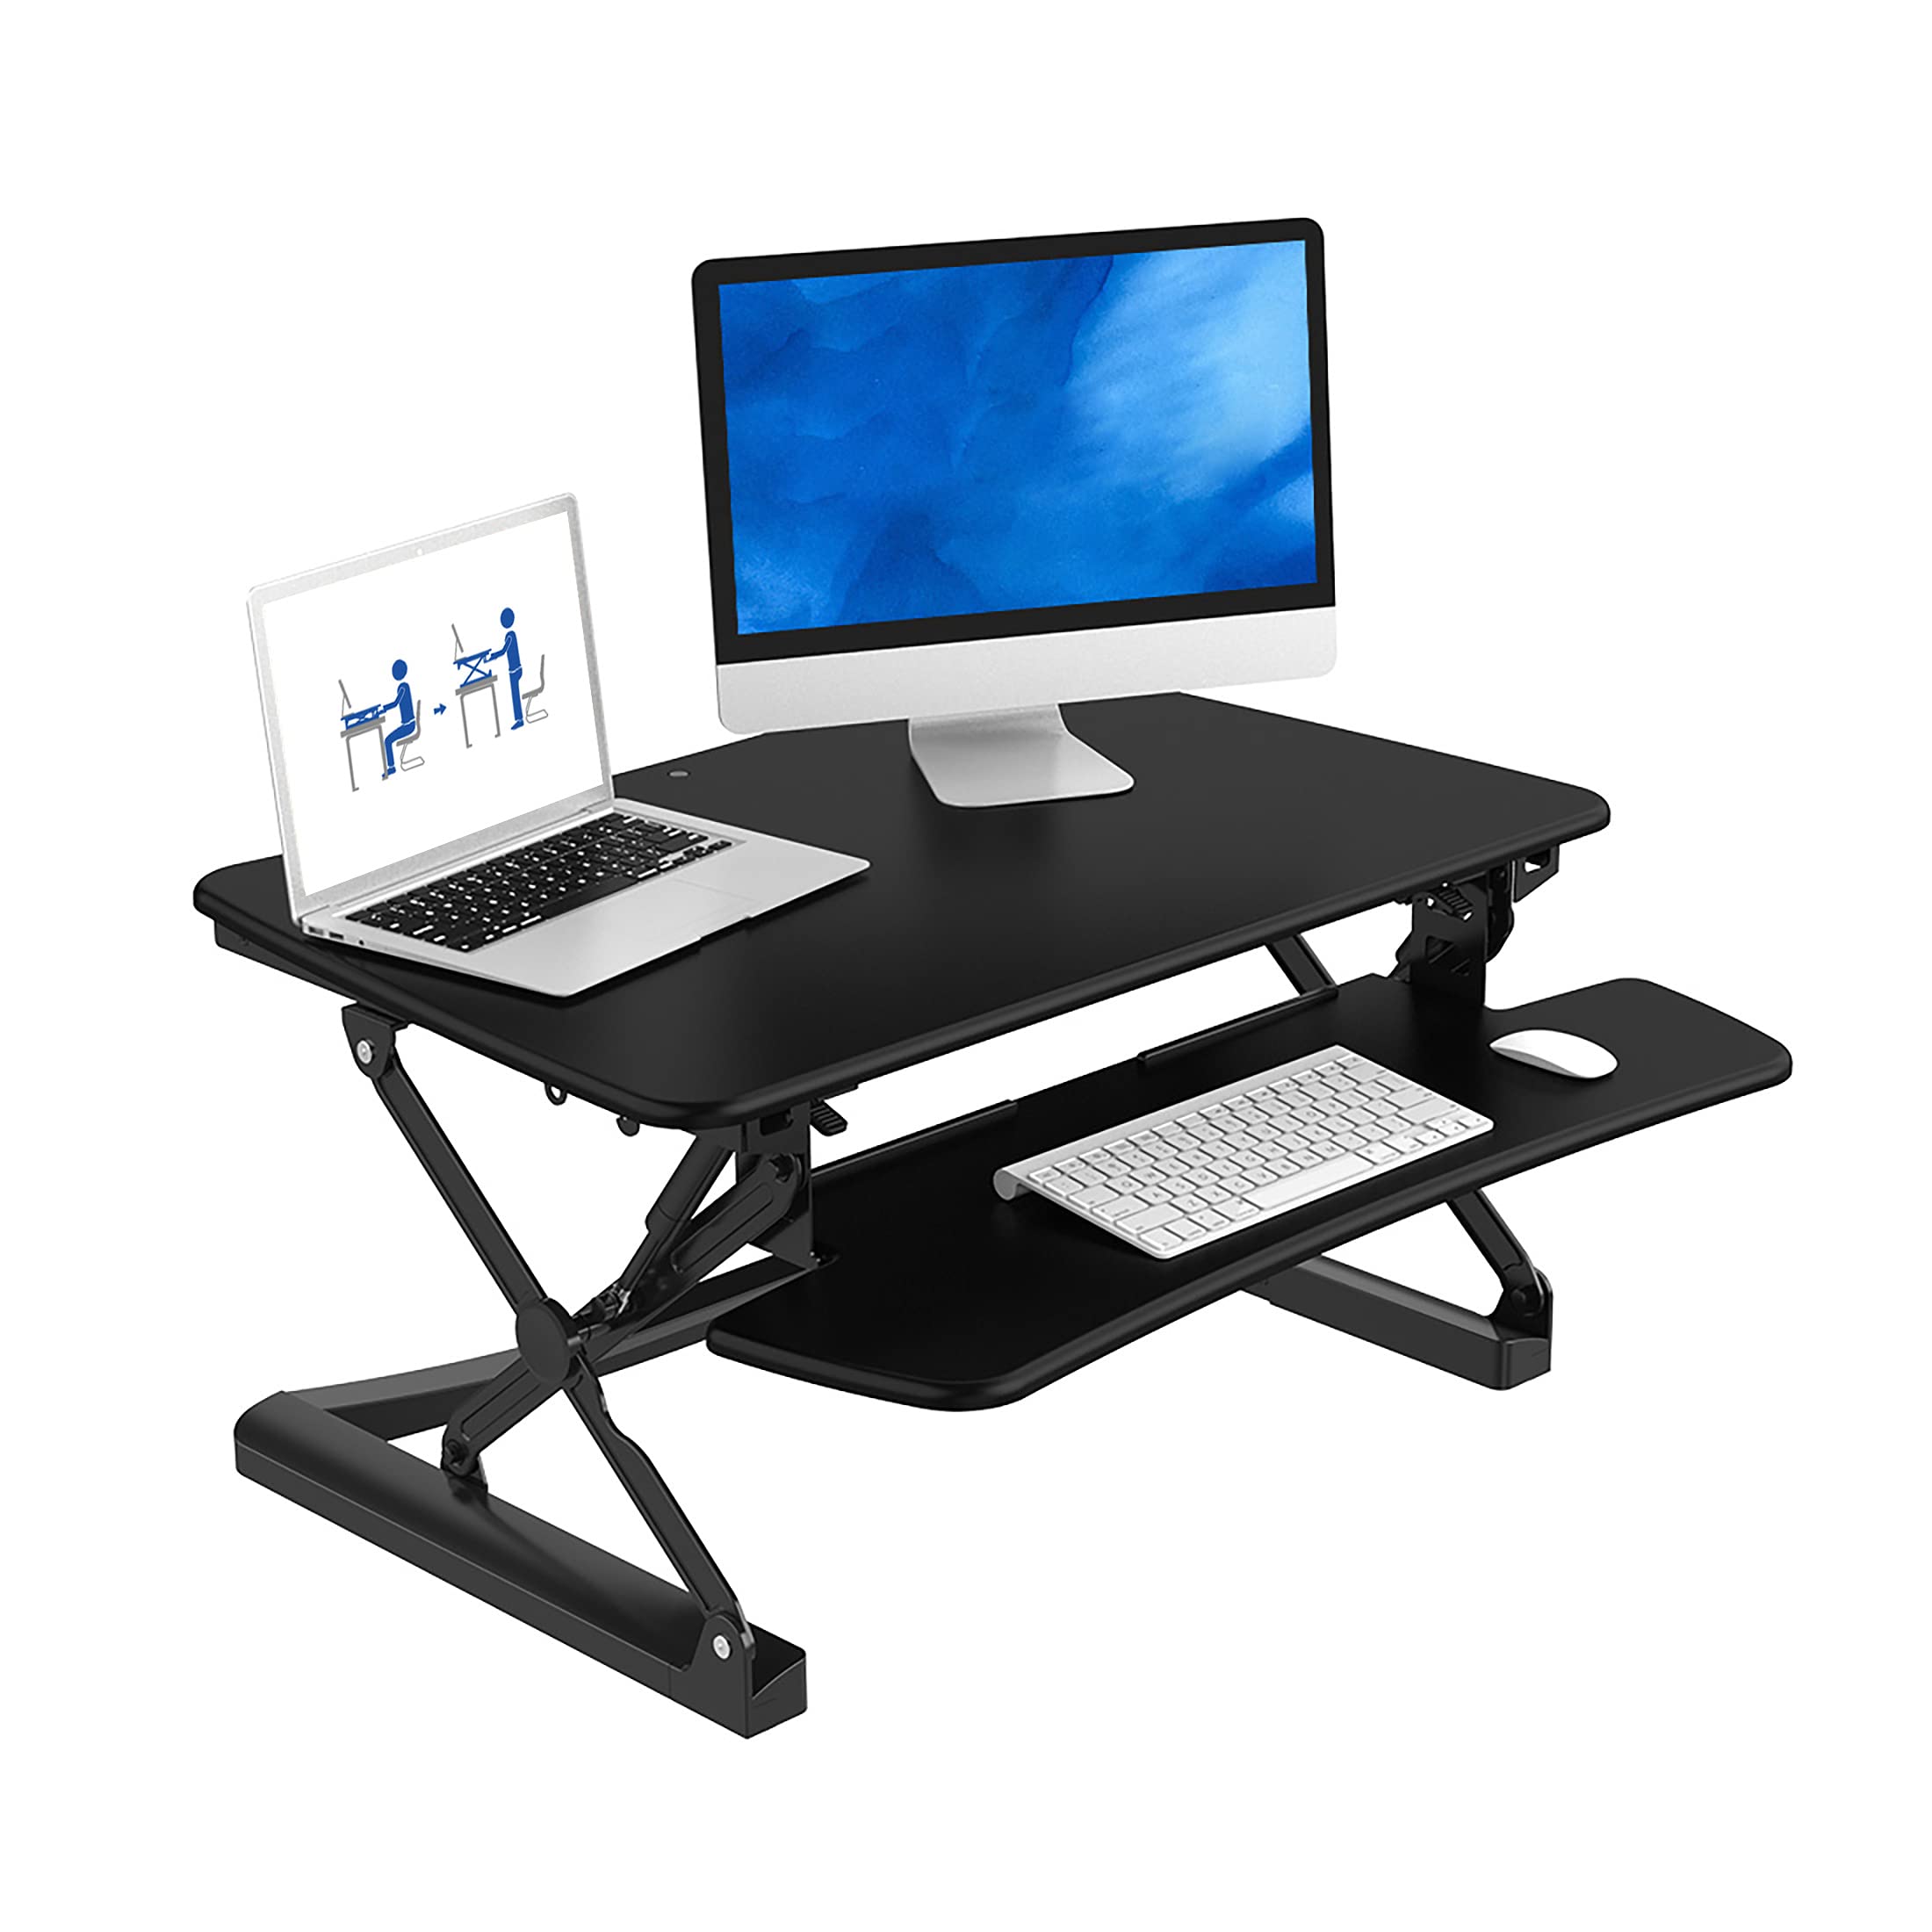 FlexiSpot Standing Desk Converter 35 Inch Stand up Desk Black Height Adjustable Desk Riser Sit Stand Office Desk Workstations for Monitor Laptop wi...